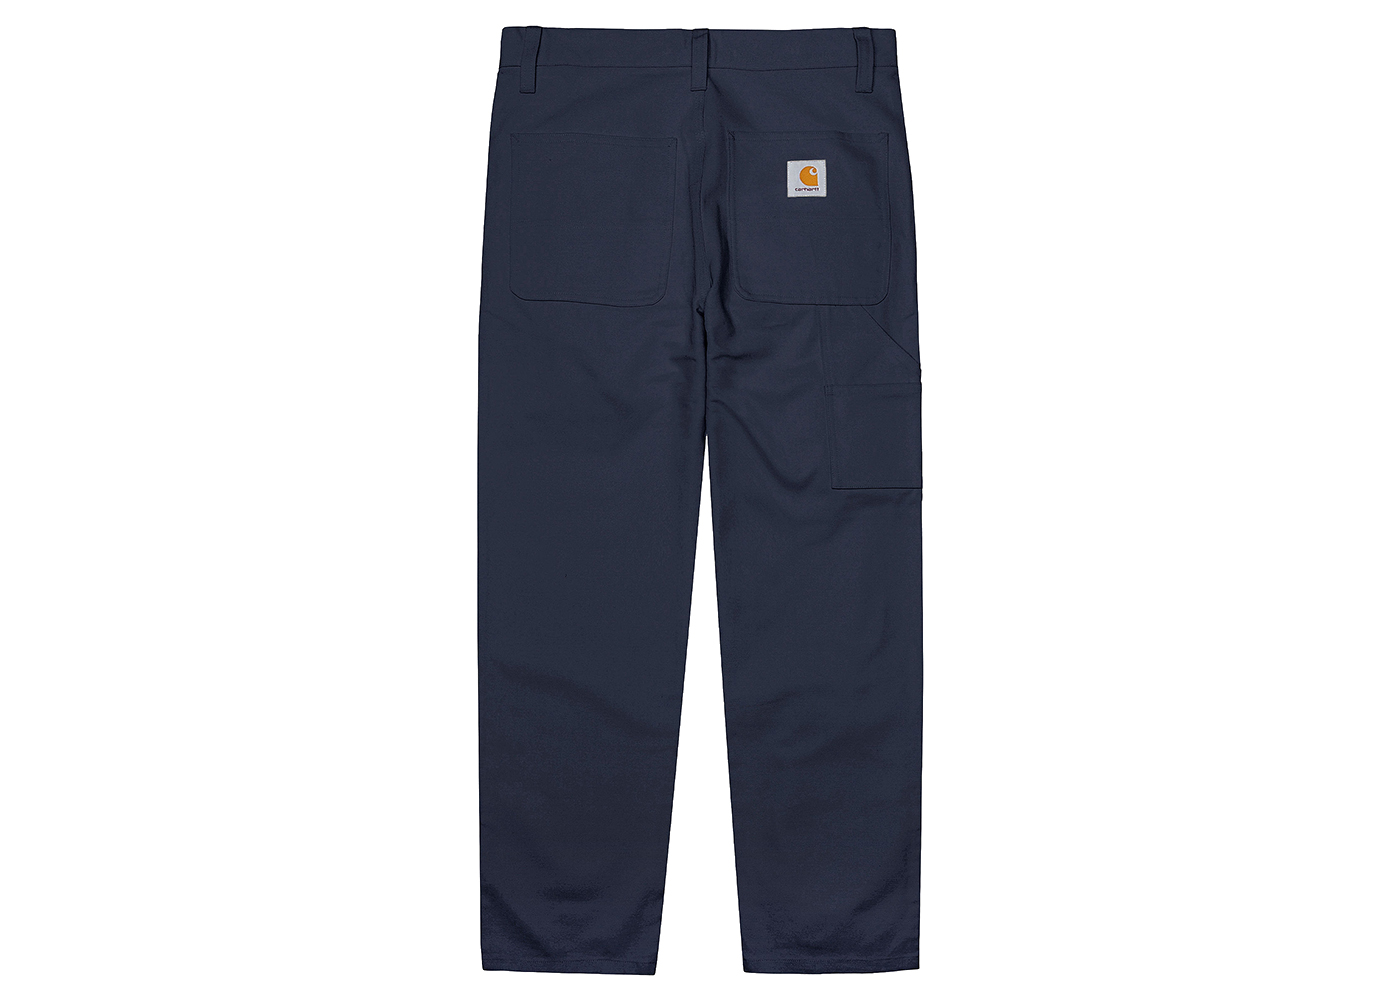 Carhartt WIP x Kunichi Nomura Chino Pants Navy Men's - FW22 - US